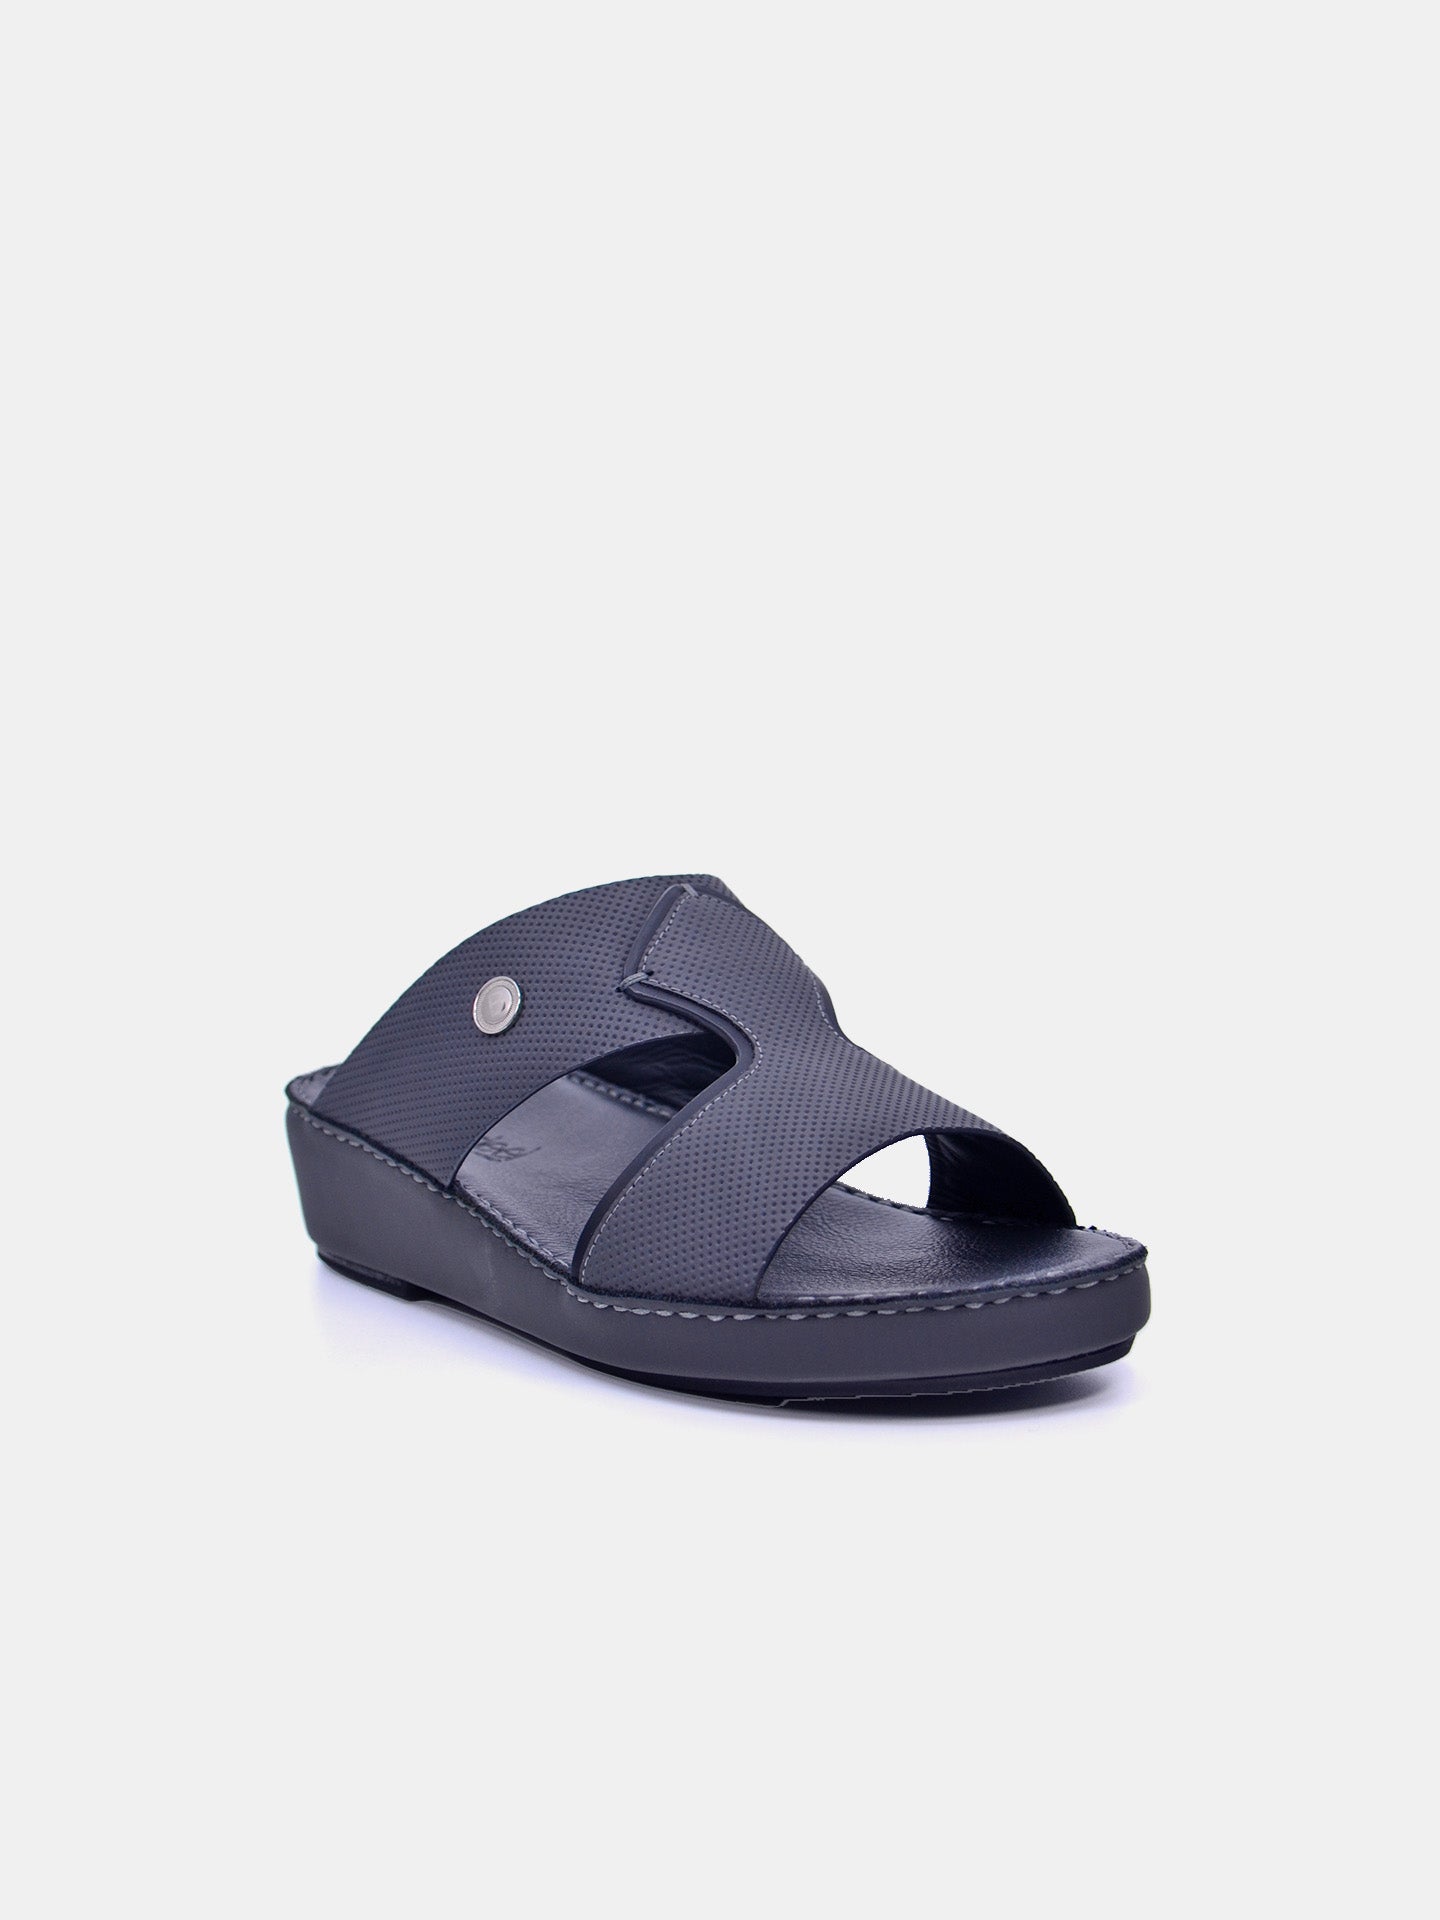 Barjeel Uno BSP1-51 Men's Arabic Sandals #color_Grey